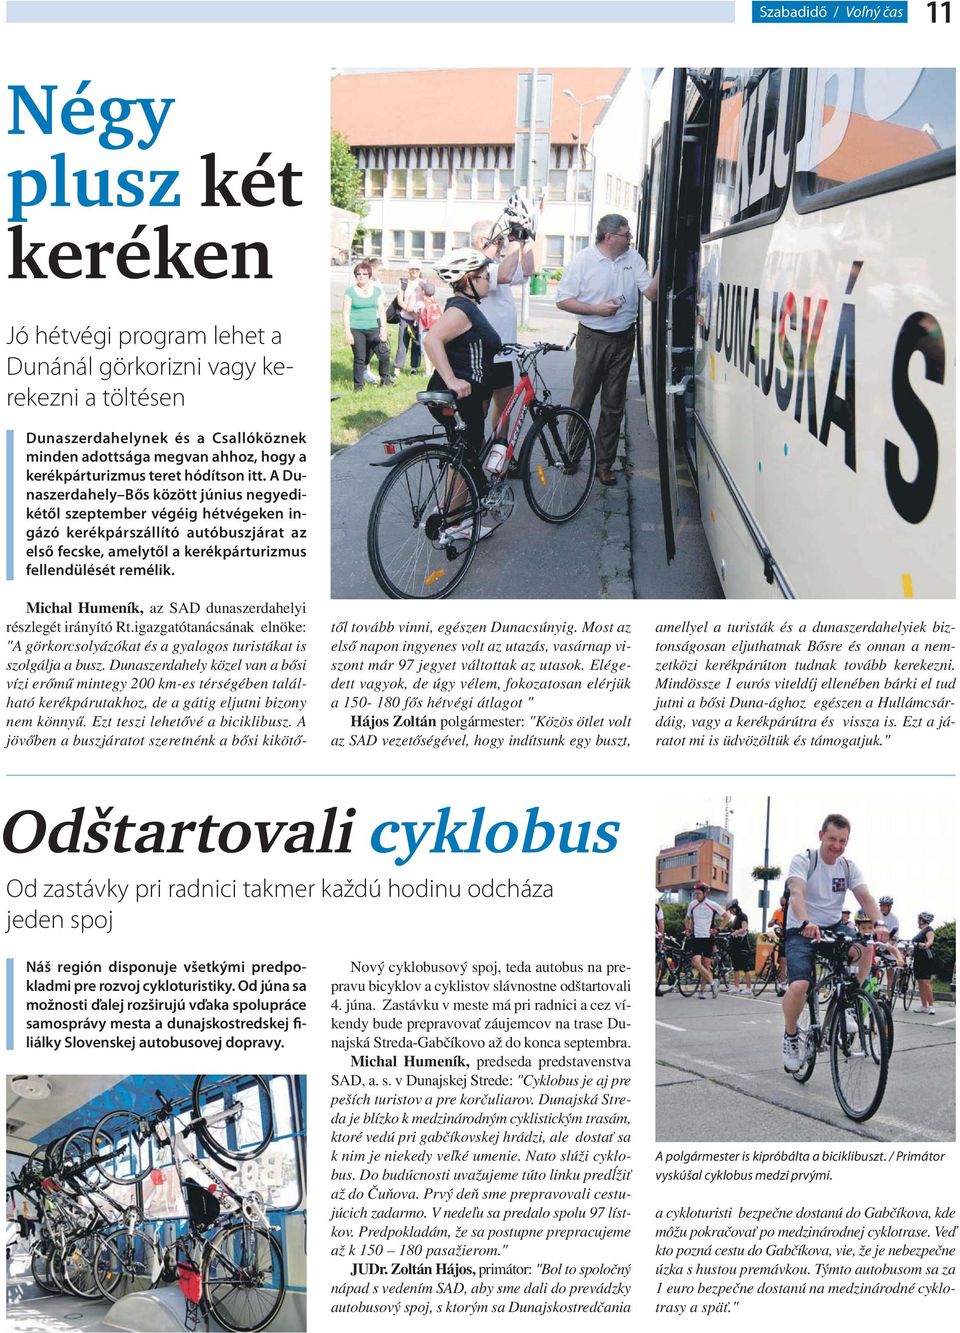 A Dunaszerdahely Bős között június negyedikétől szeptember végéig hétvégeken ingázó kerékpárszállító autóbuszjárat az első fecske, amelytől a kerékpárturizmus fellendülését remélik.